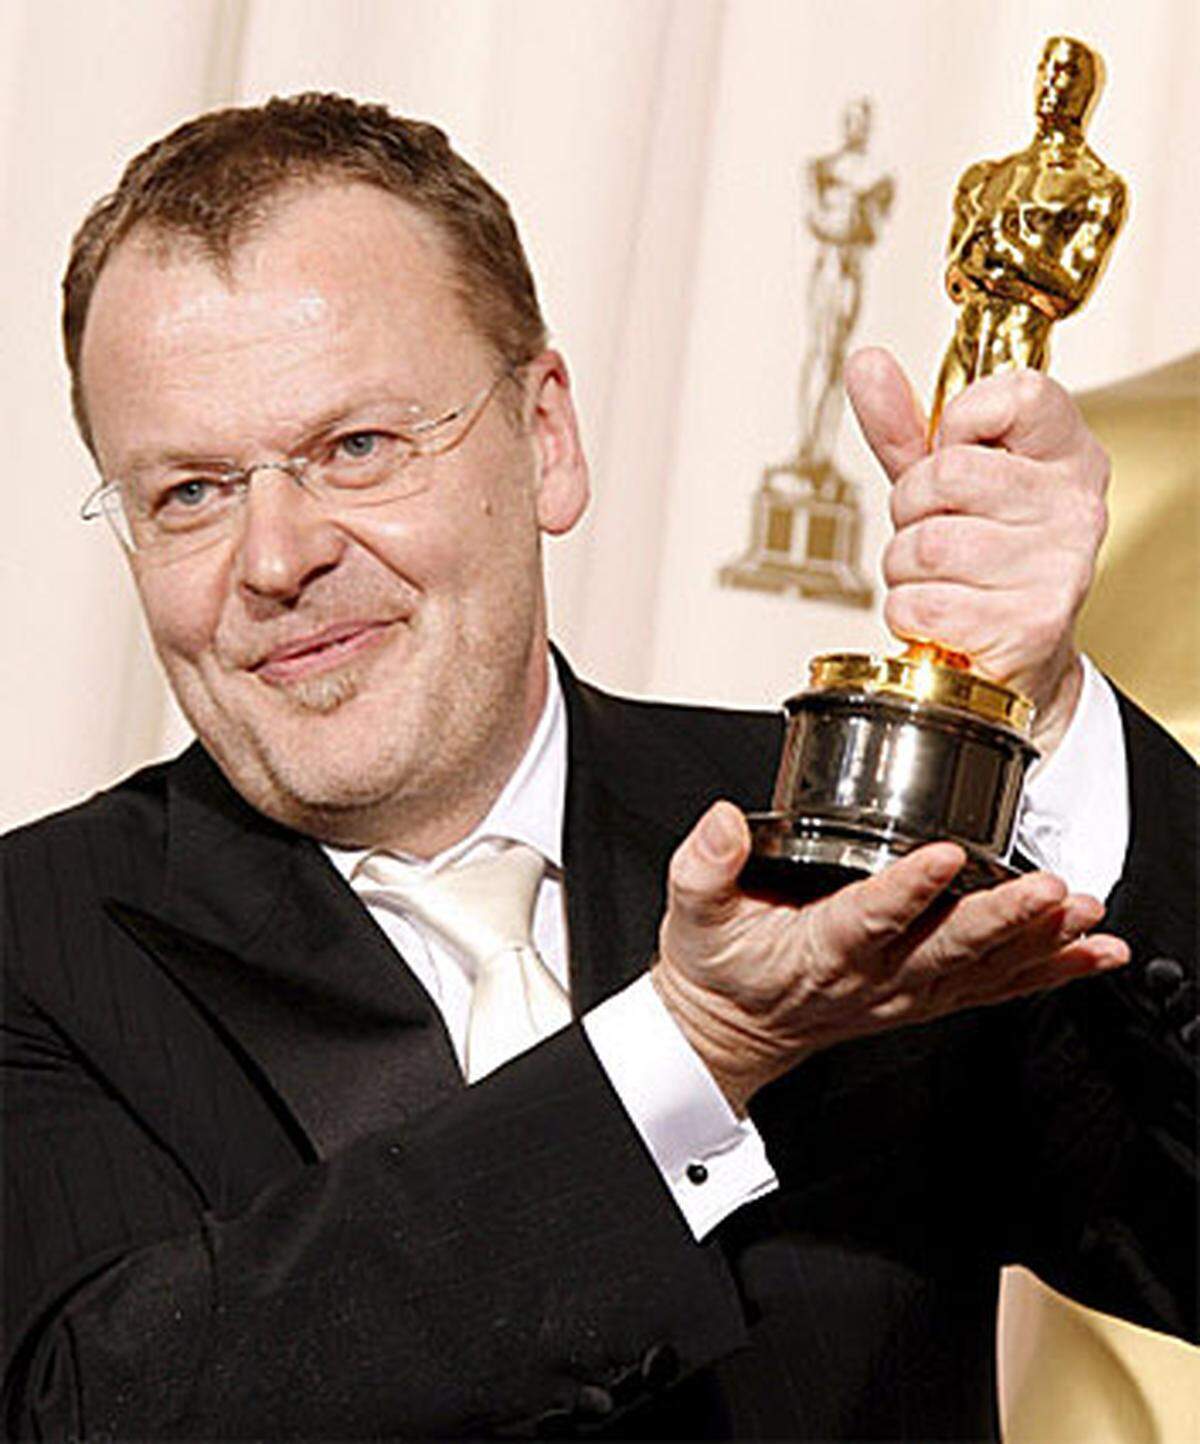 Der Wiener Regisseur Stefan Ruzowitzky holte 2008 mit seinem KZ-Drama "Die Fälscher" den Oscar für den besten fremdsprachigen Film.